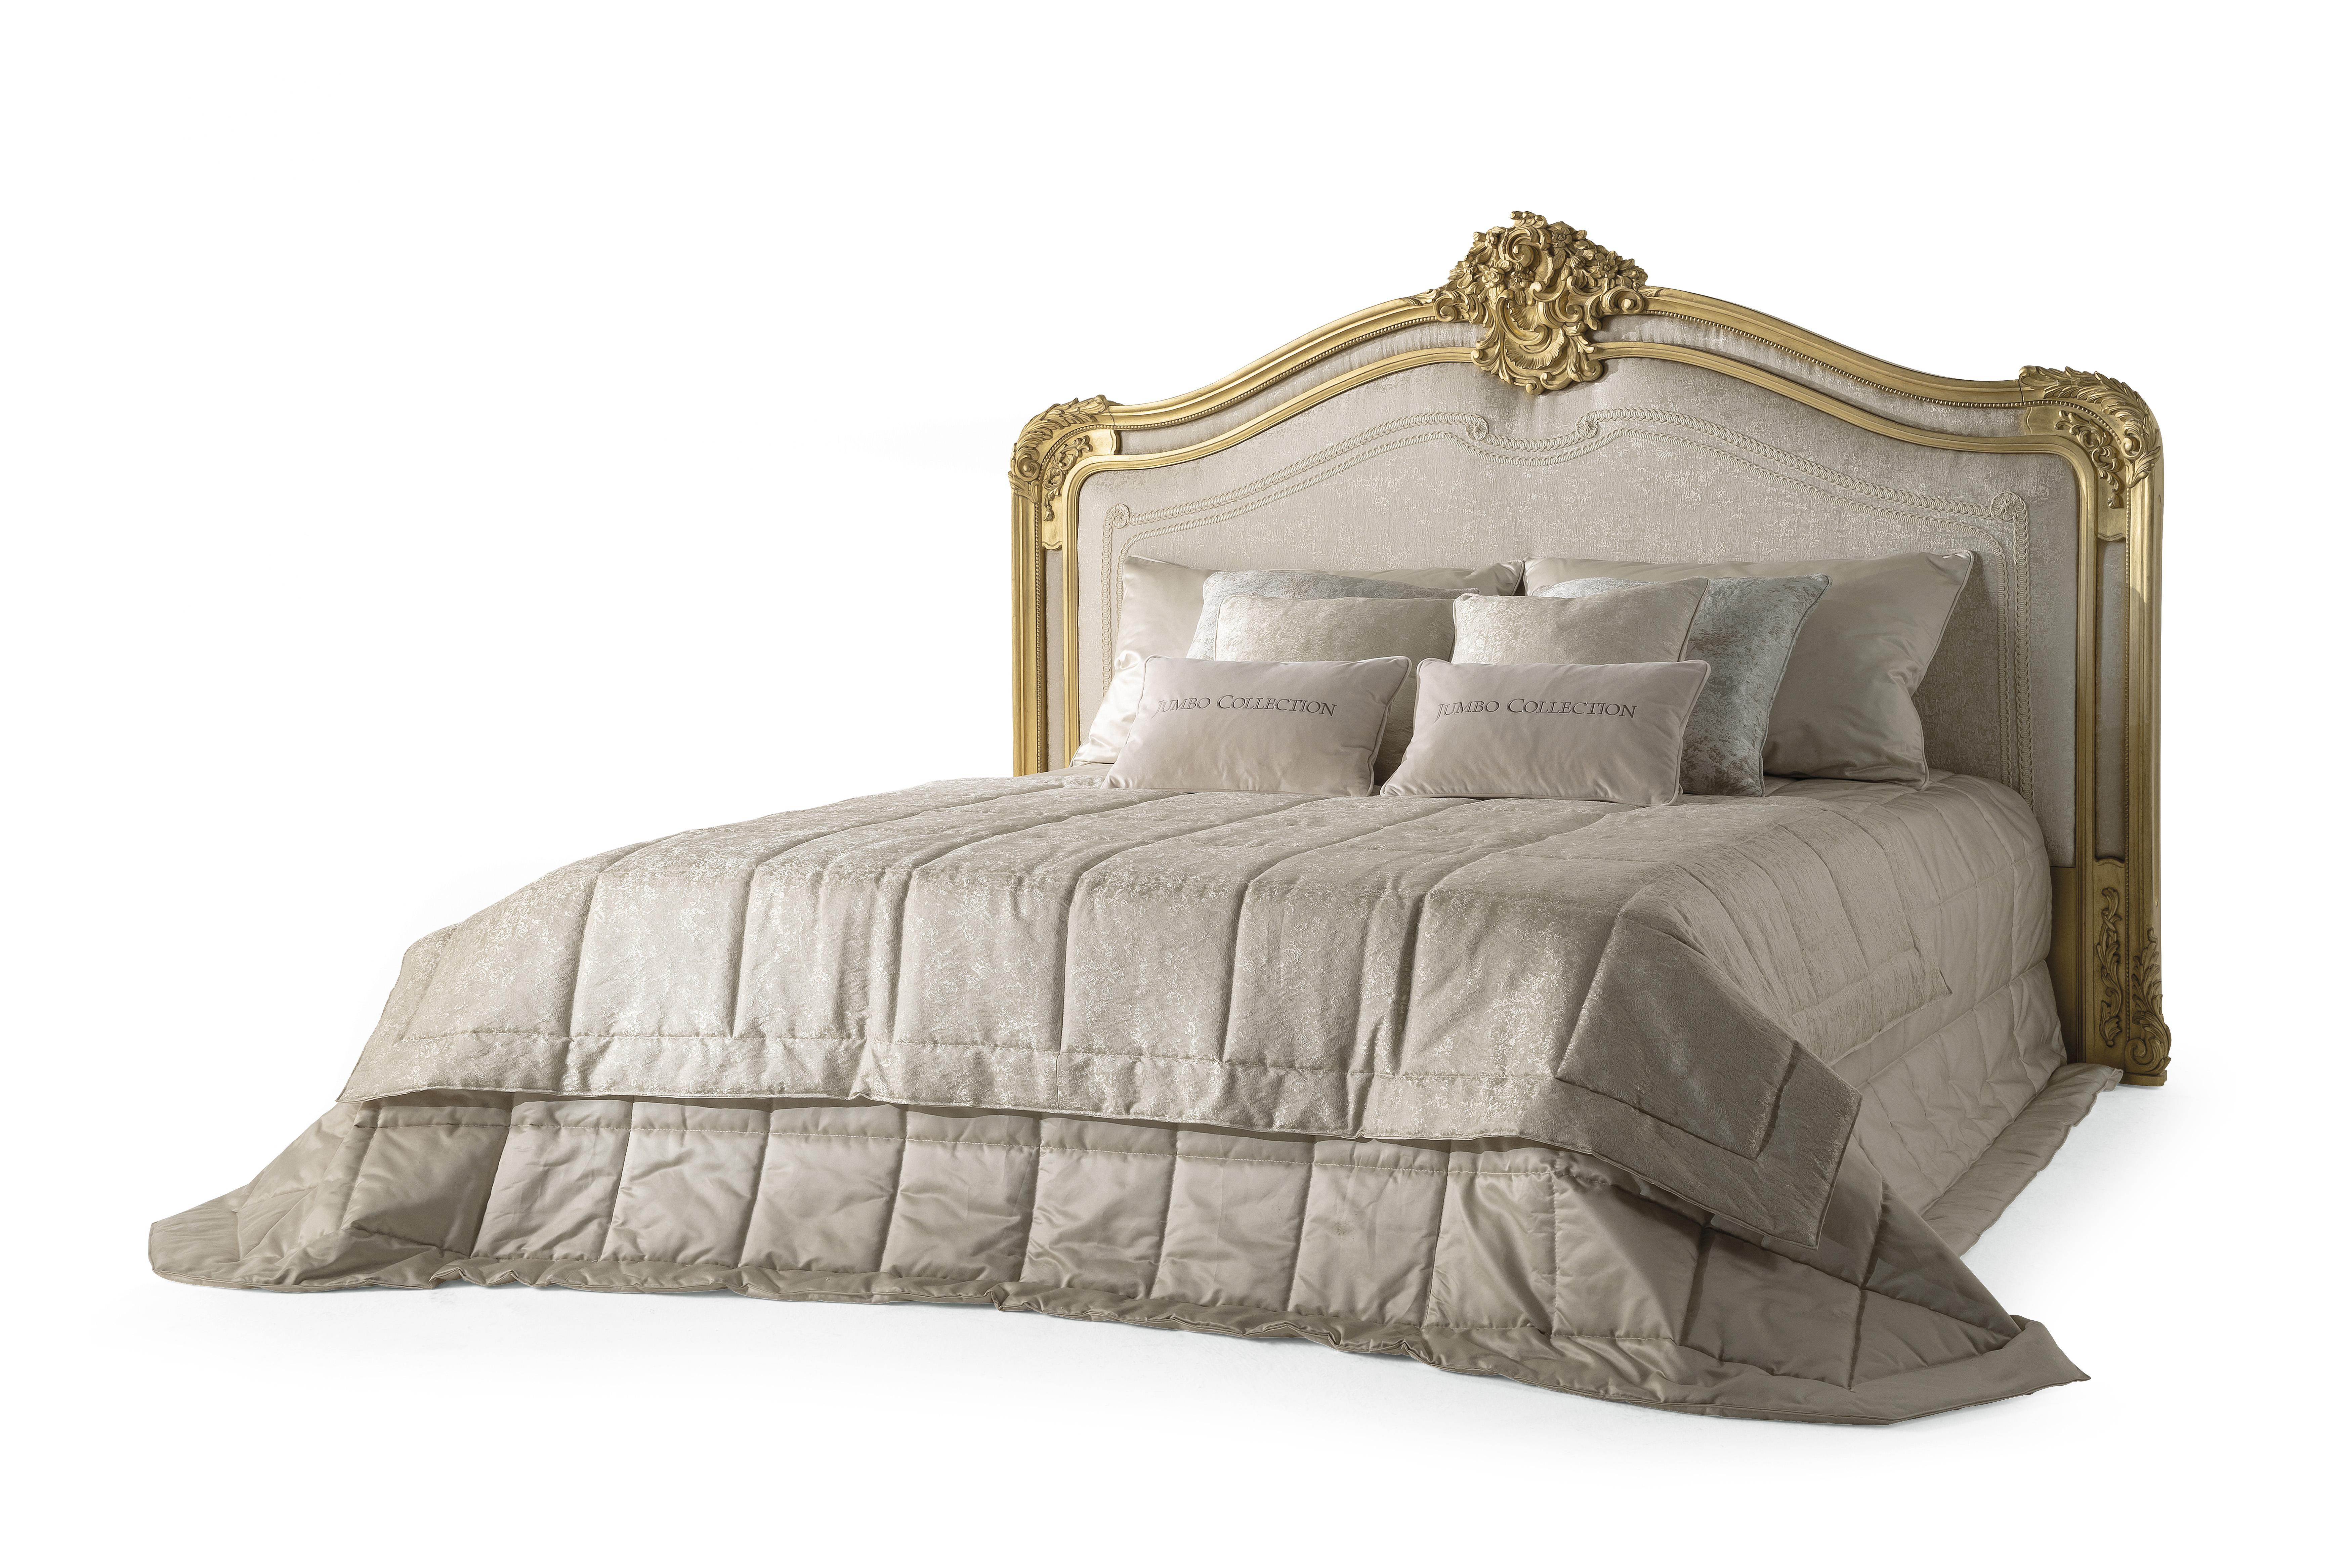 Chaine ist ein klassisches Bett im französischen Stil, das perfekt das Erbe der Marke Jumbo Collection zum Ausdruck bringt, bei dem die Liebe zum Detail, die Handwerkskunst und die edlen Materialien im Vordergrund stehen. Das prächtige Kopfteil aus